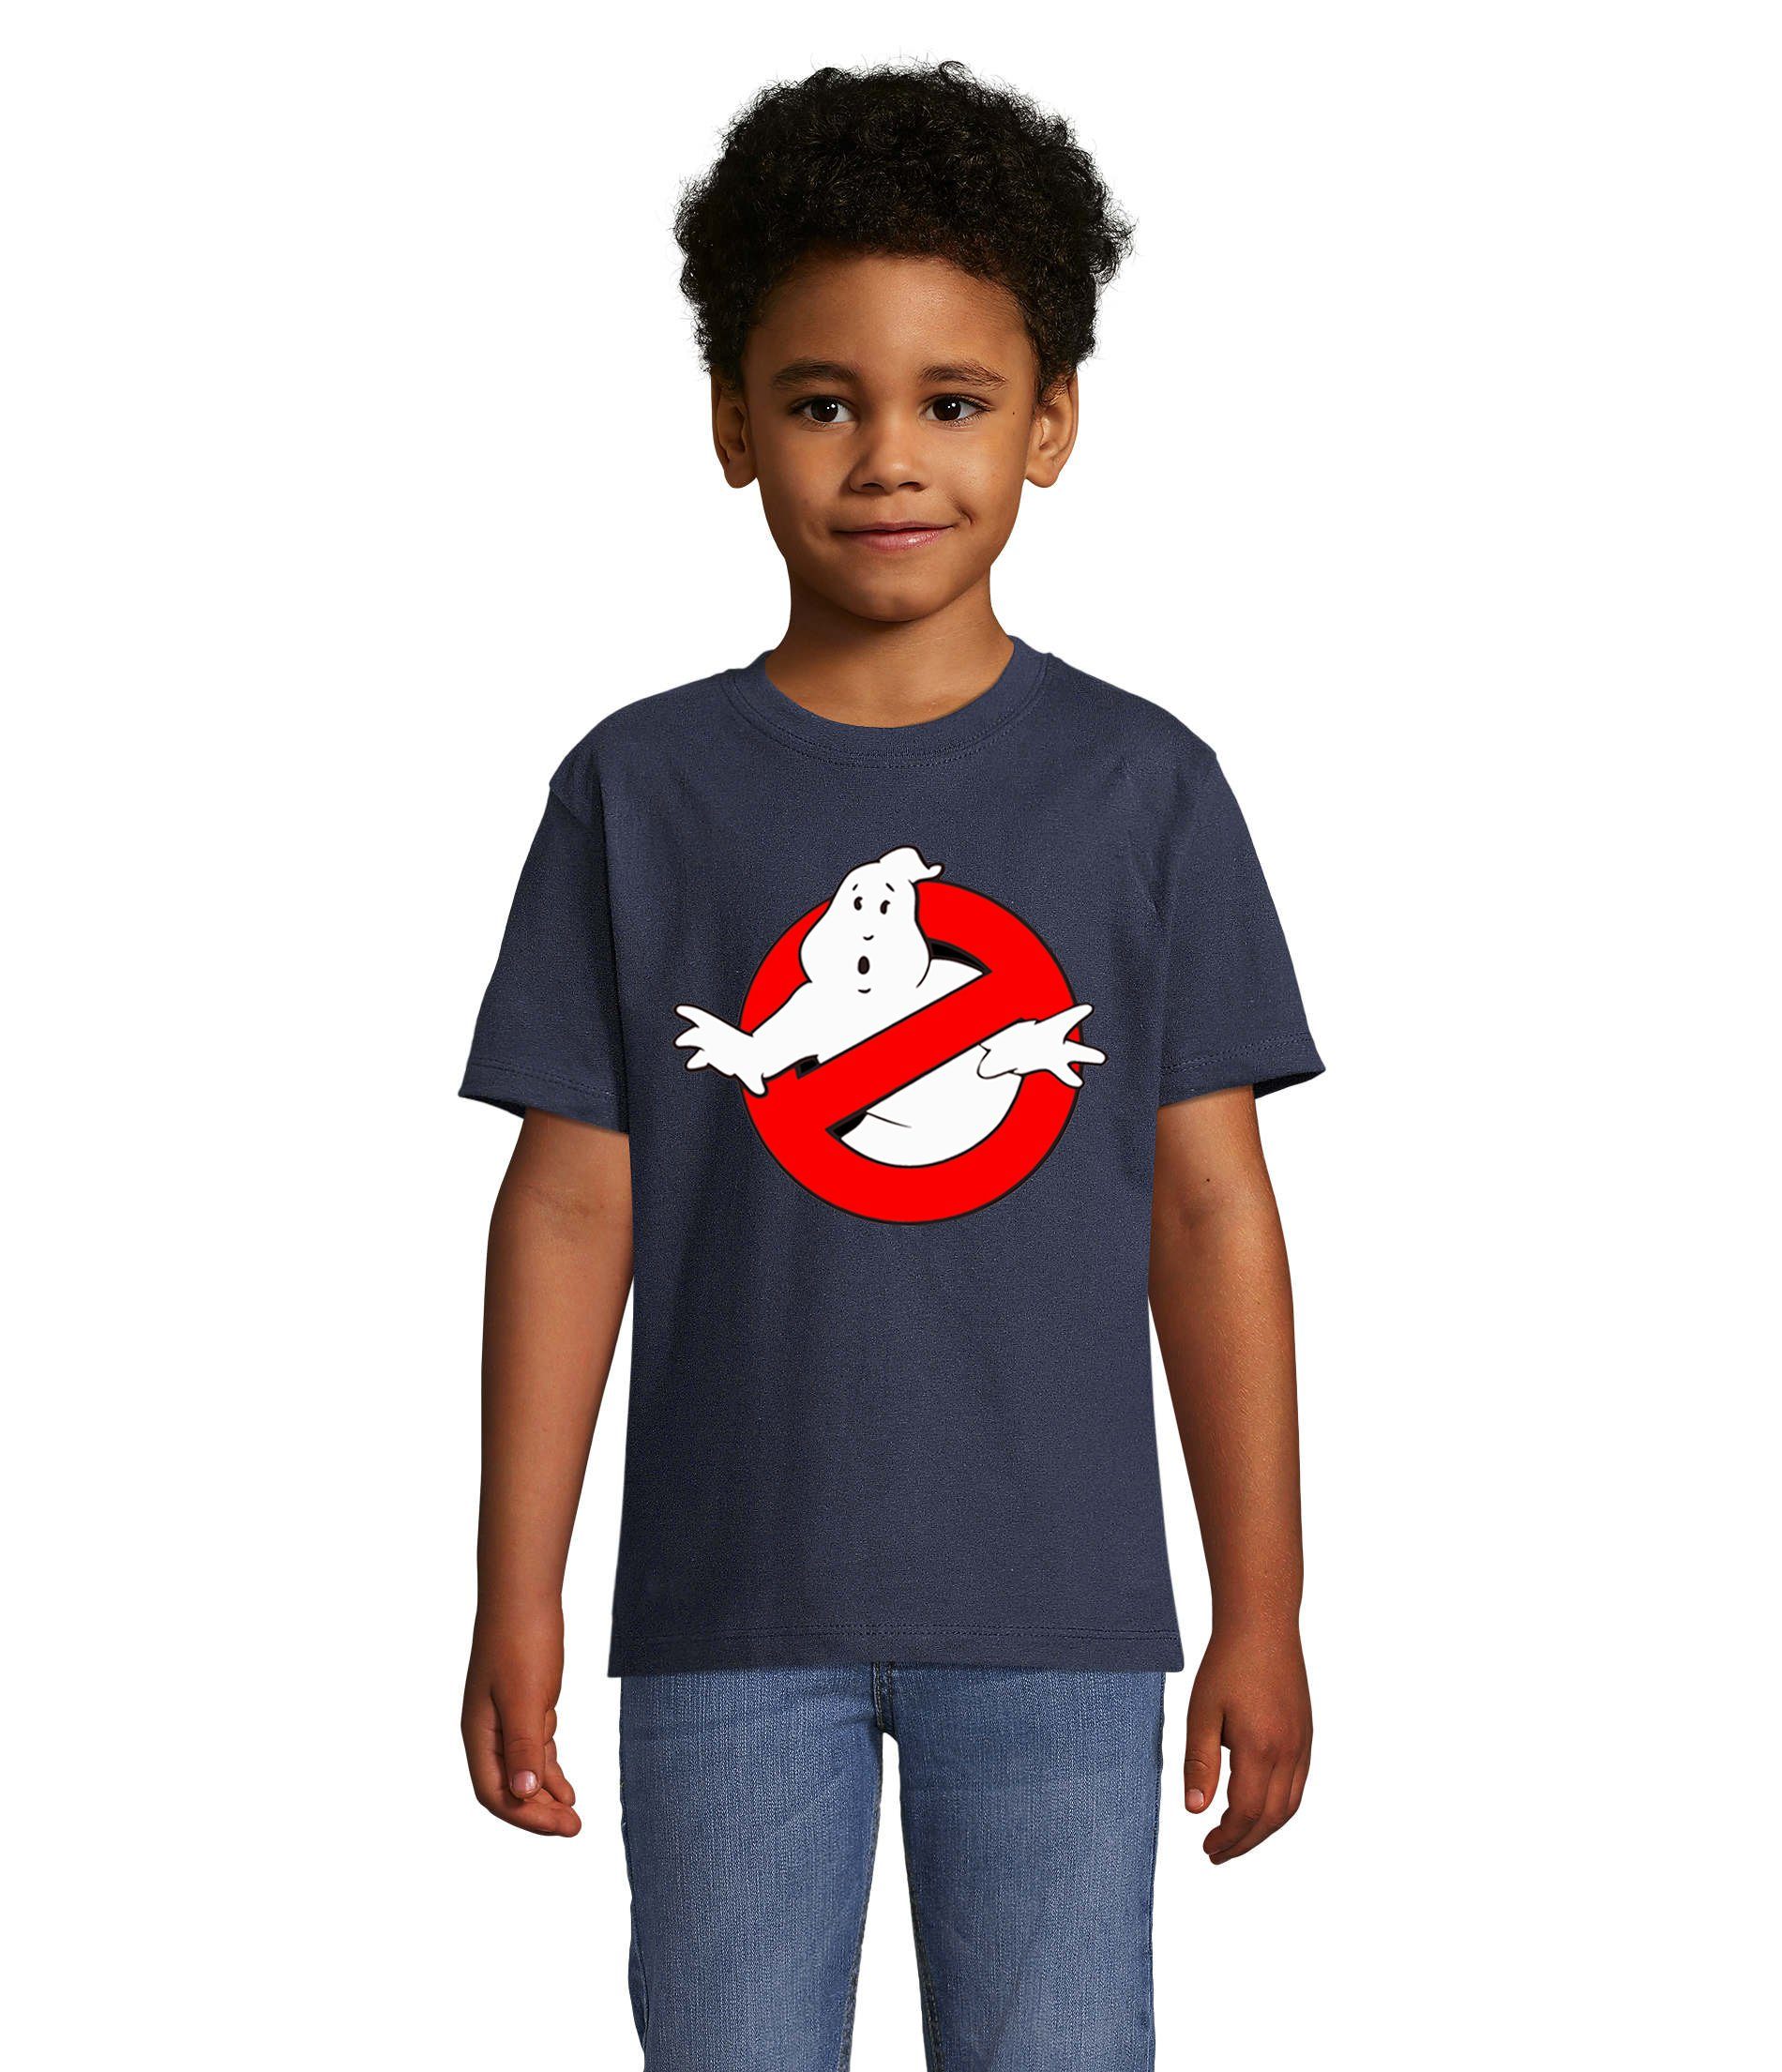 Blondie & Brownie T-Shirt Kinder Jungen & Mädchen Ghostbusters Ghost Geister Geisterjäger in vielen Farben Navyblau